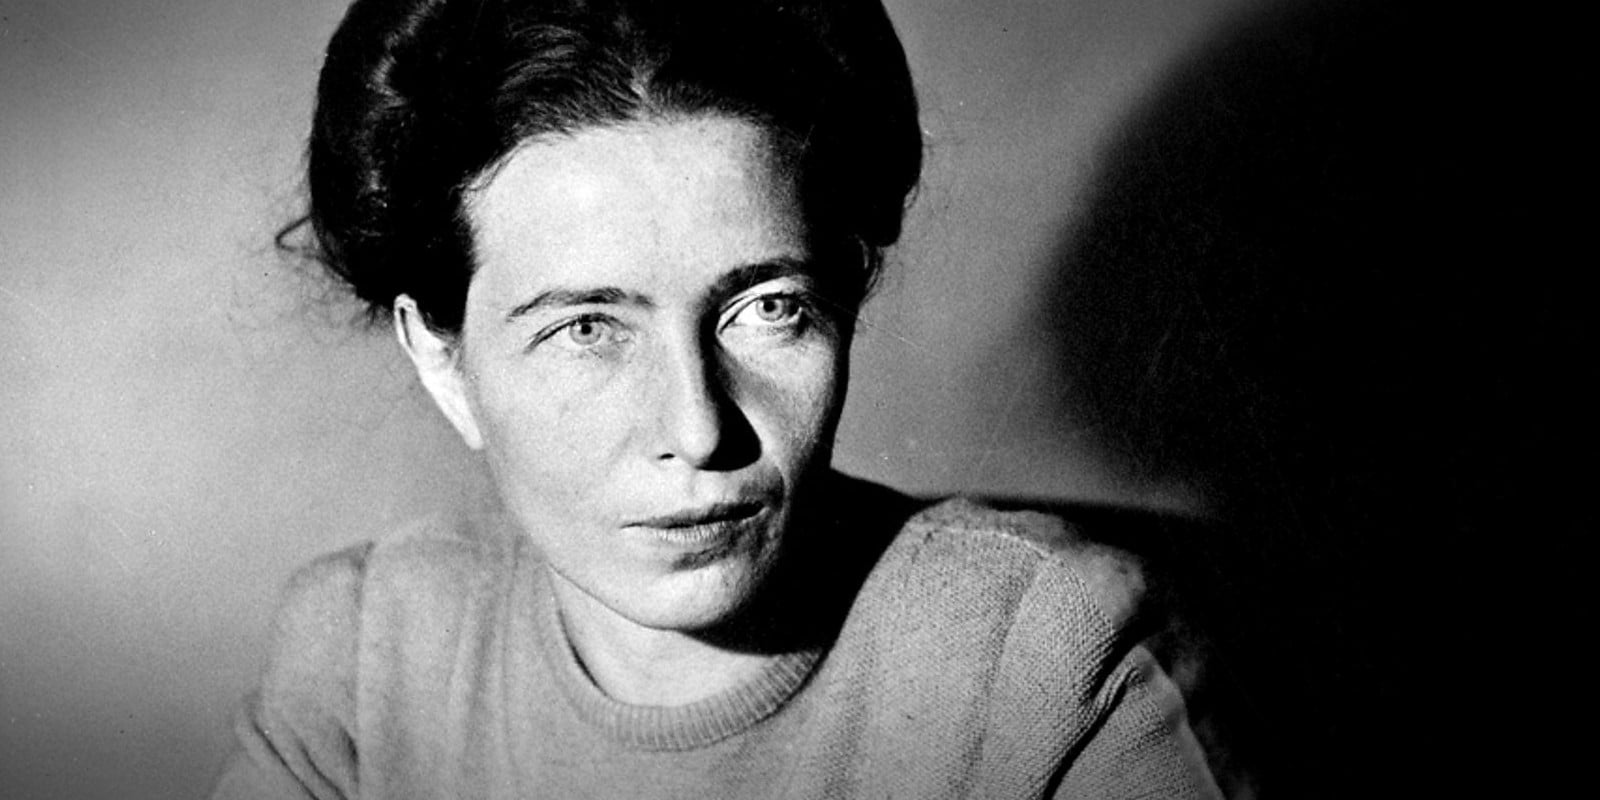 Tra le notizie dal mondo dell'arte di questa settimana, il carteggio di Simone de Beauvoir con lettori e lettrici che le chiedevano consigli personali, demolendo qualche tabù